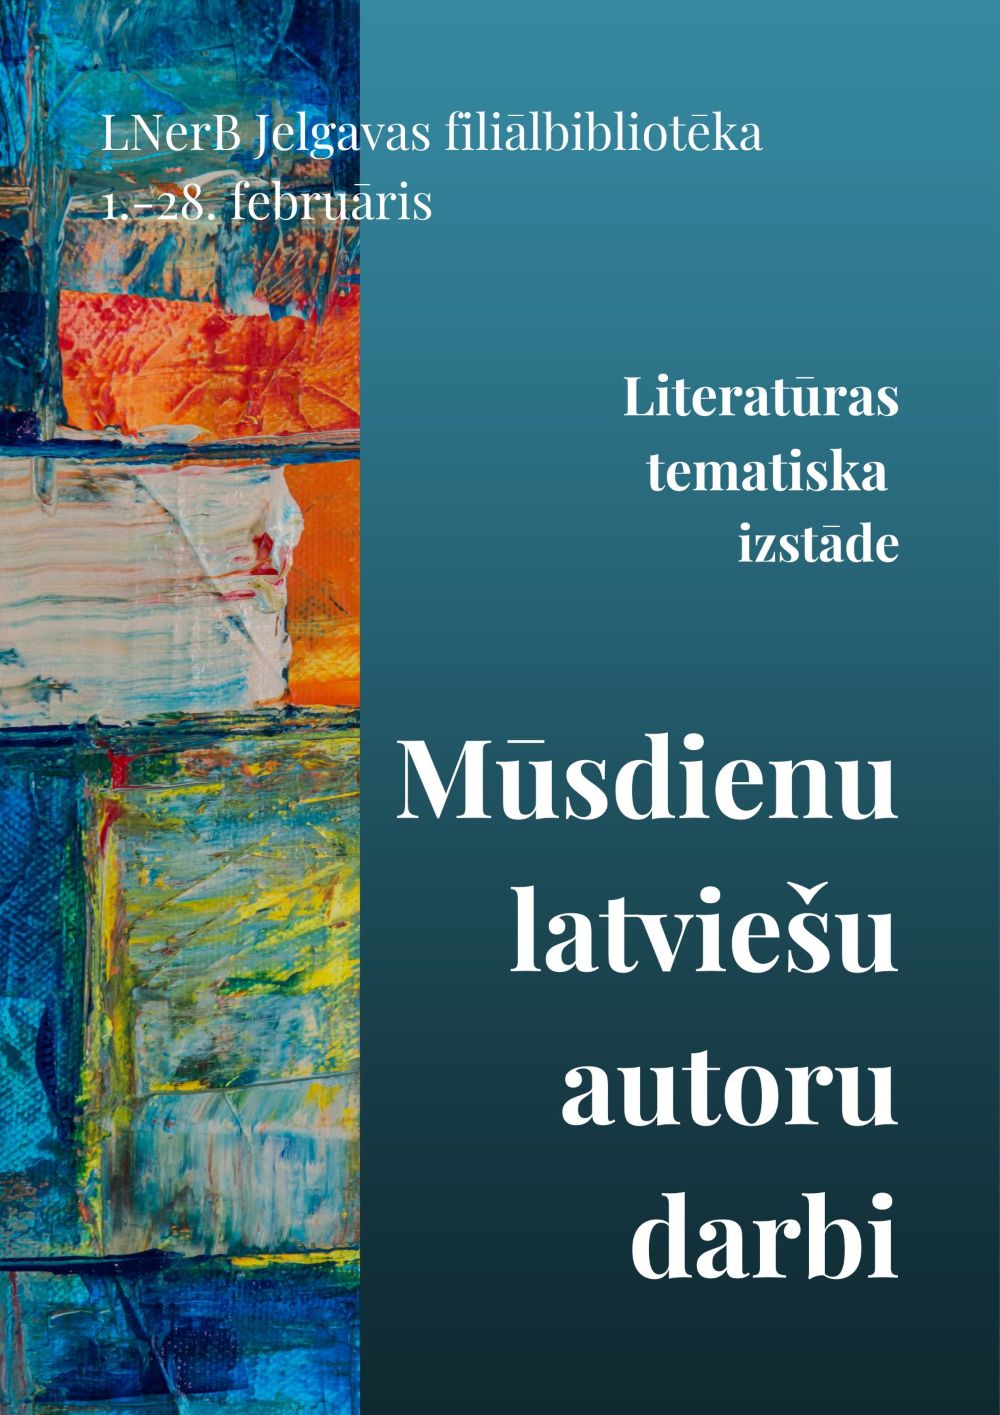 Plakāts izstādei "Mūsdienu latviešu autoru darbi"